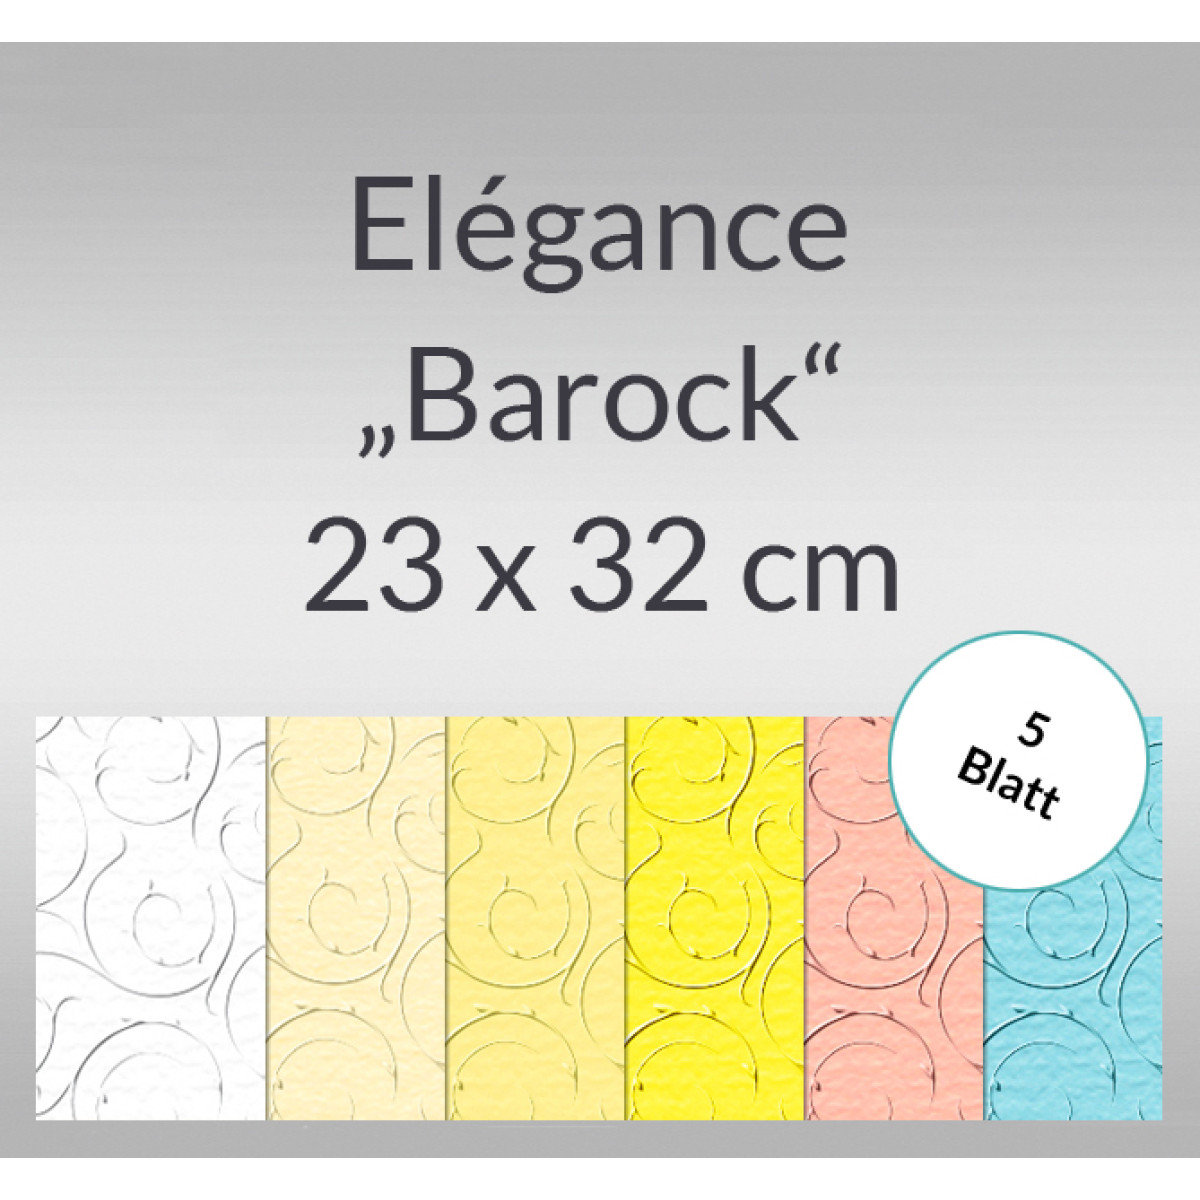 Elegance "Barock" 220 g/qm 23 x 32 cm - 5 Blatt